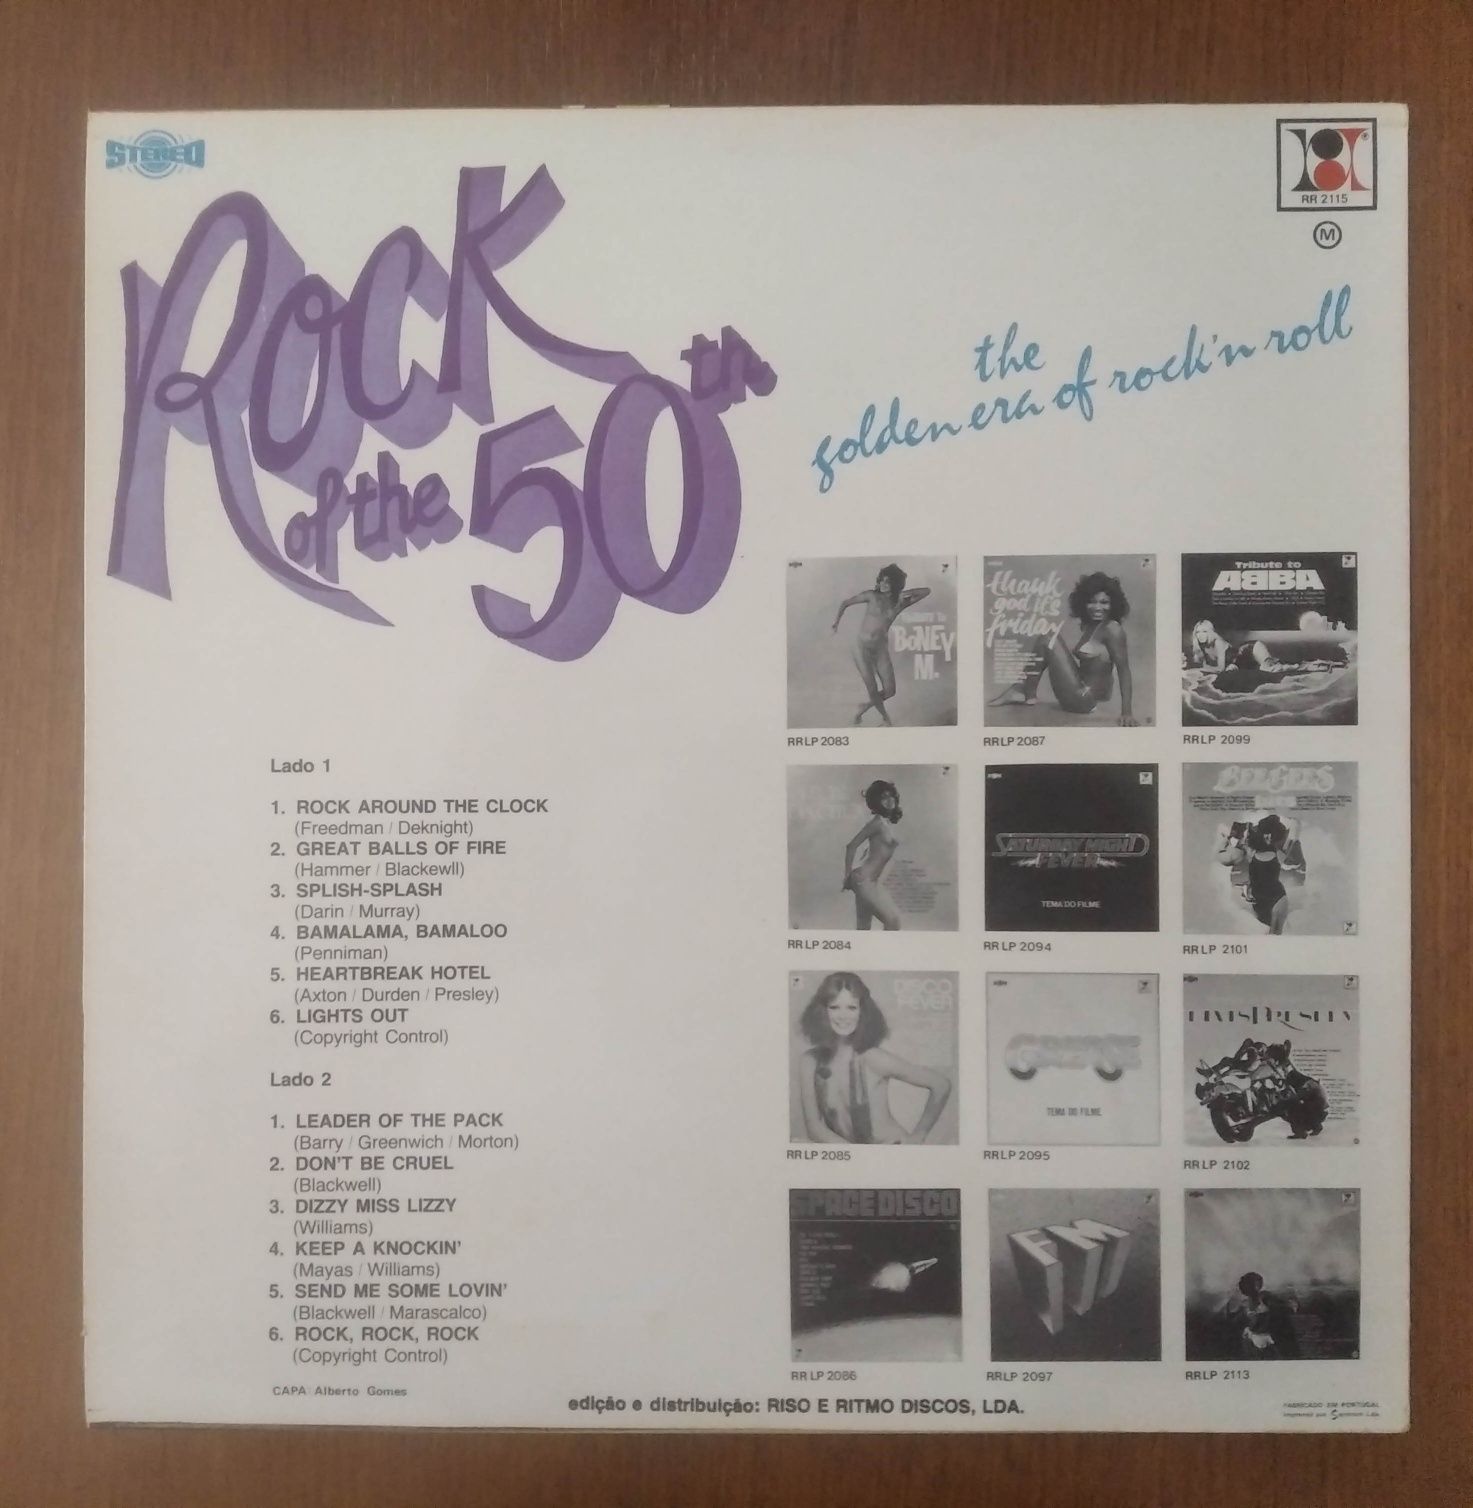 Disco de vinil "Rock of the 50th"